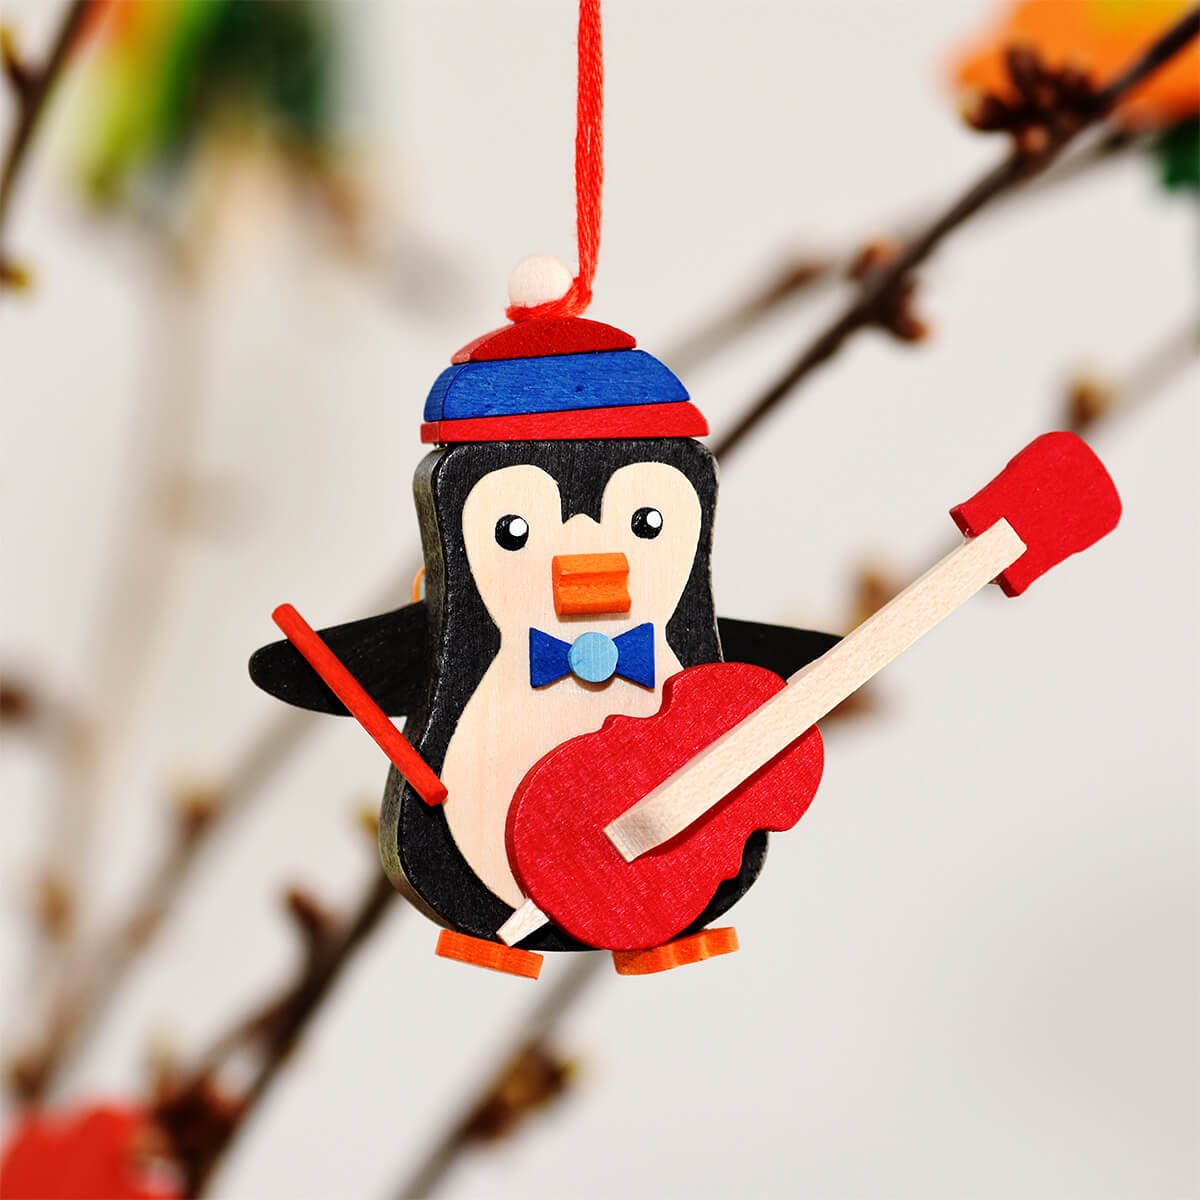 Pinguin als Baumschmuck mit Bass